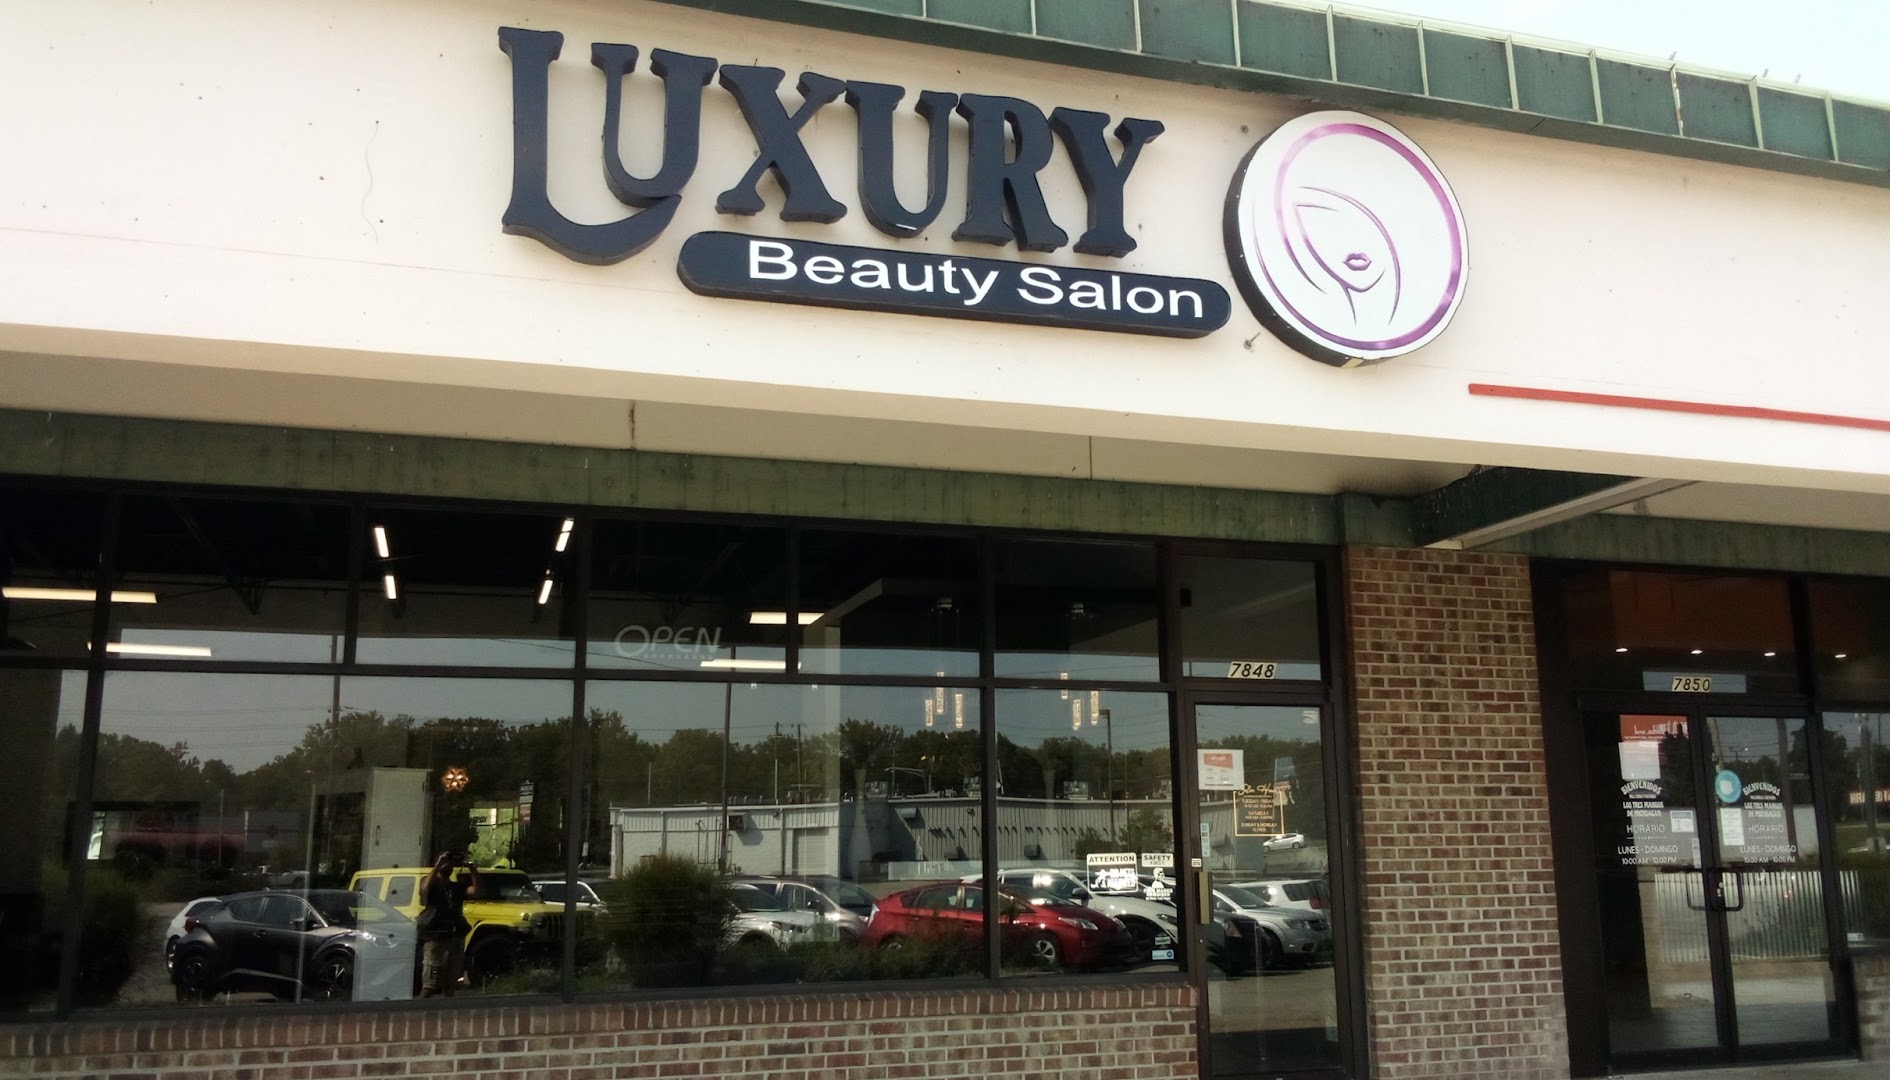 Luxury Beauty Salon